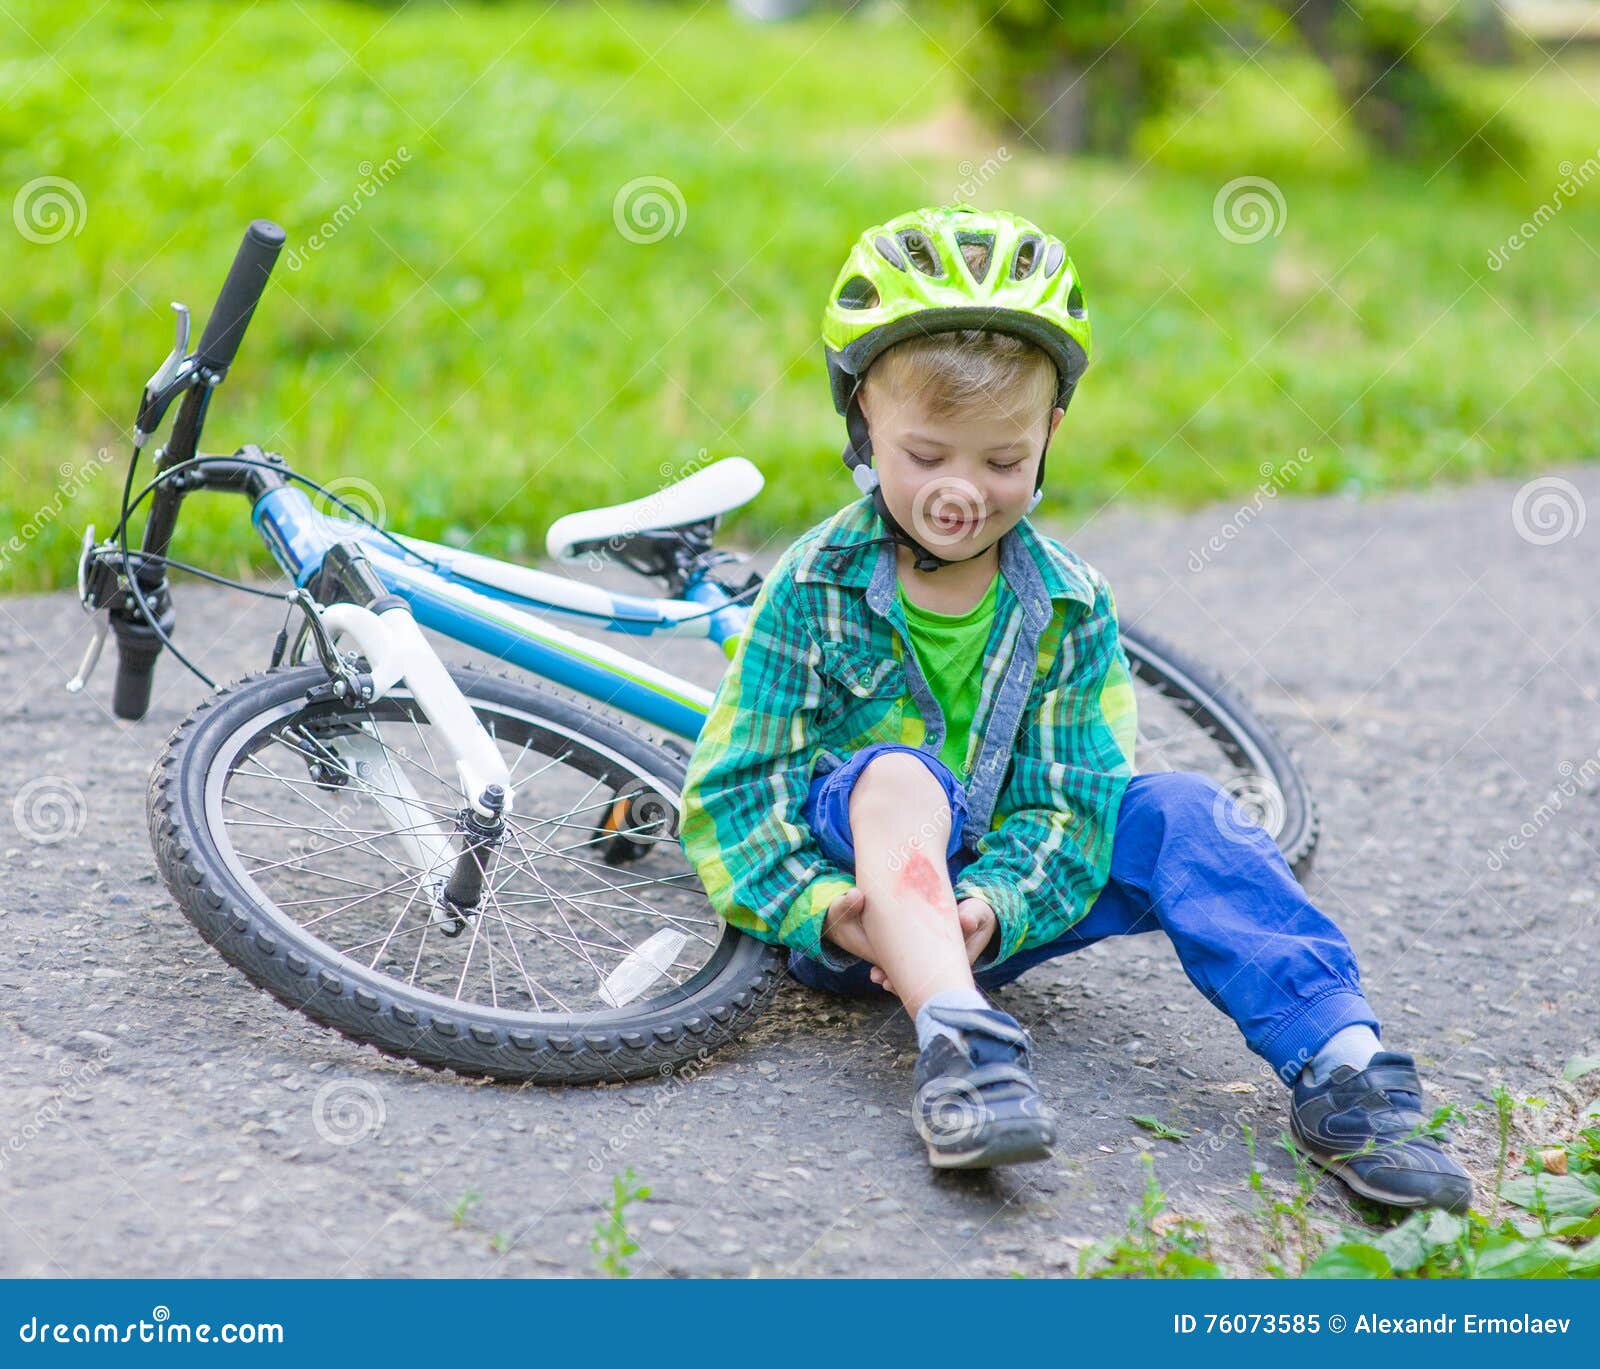 男孩从自行车跌倒了在公园 库存照片. 图片 包括有 童年, 盔甲, 生活方式, 适应, 创伤, 的闪烁, 痛苦 - 75416662